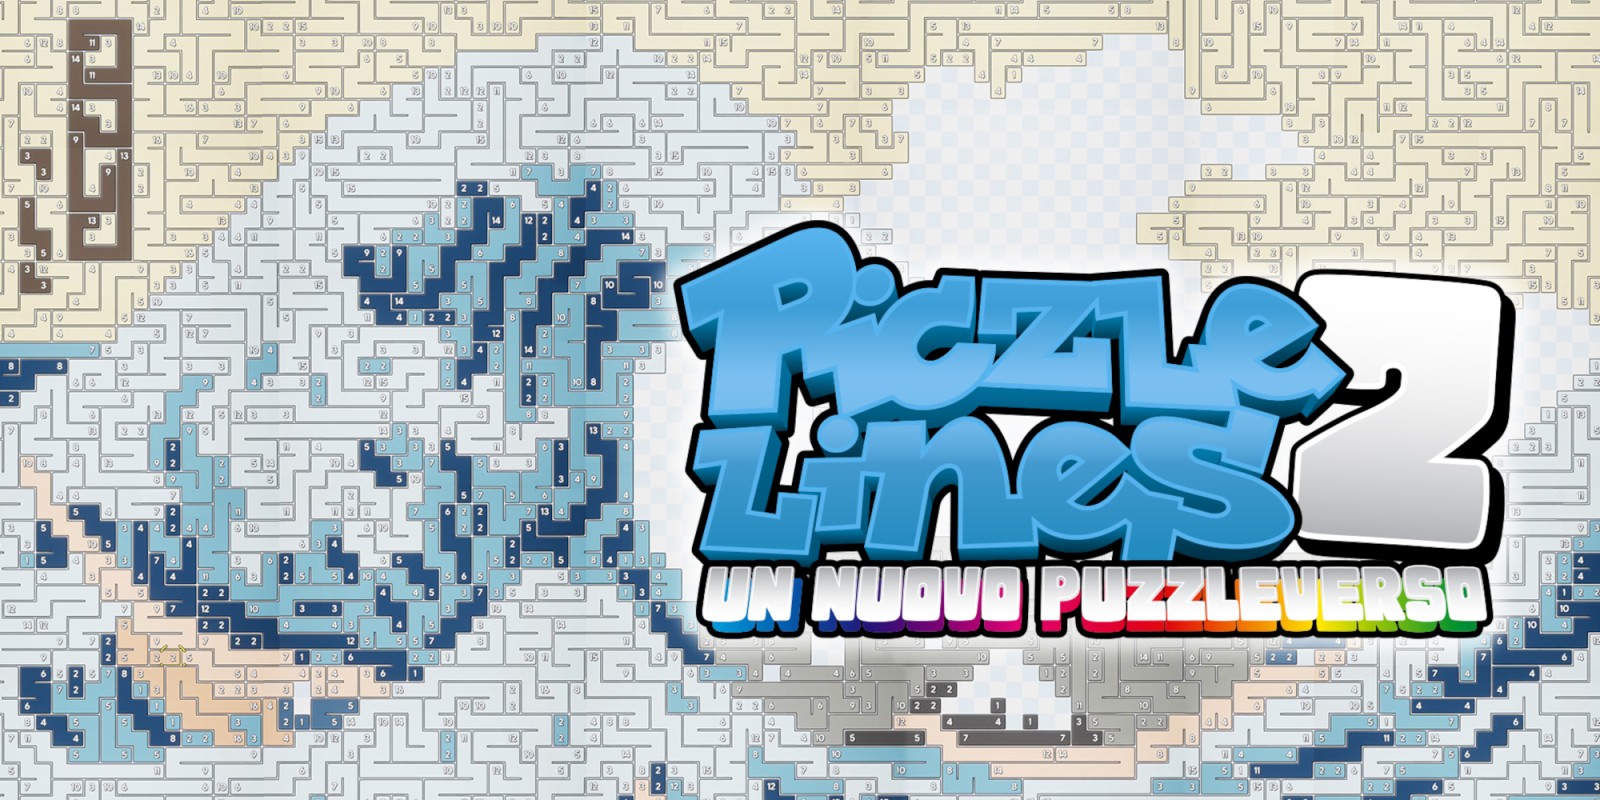 Piczle Lines 2: Un nuovo puzzleverso